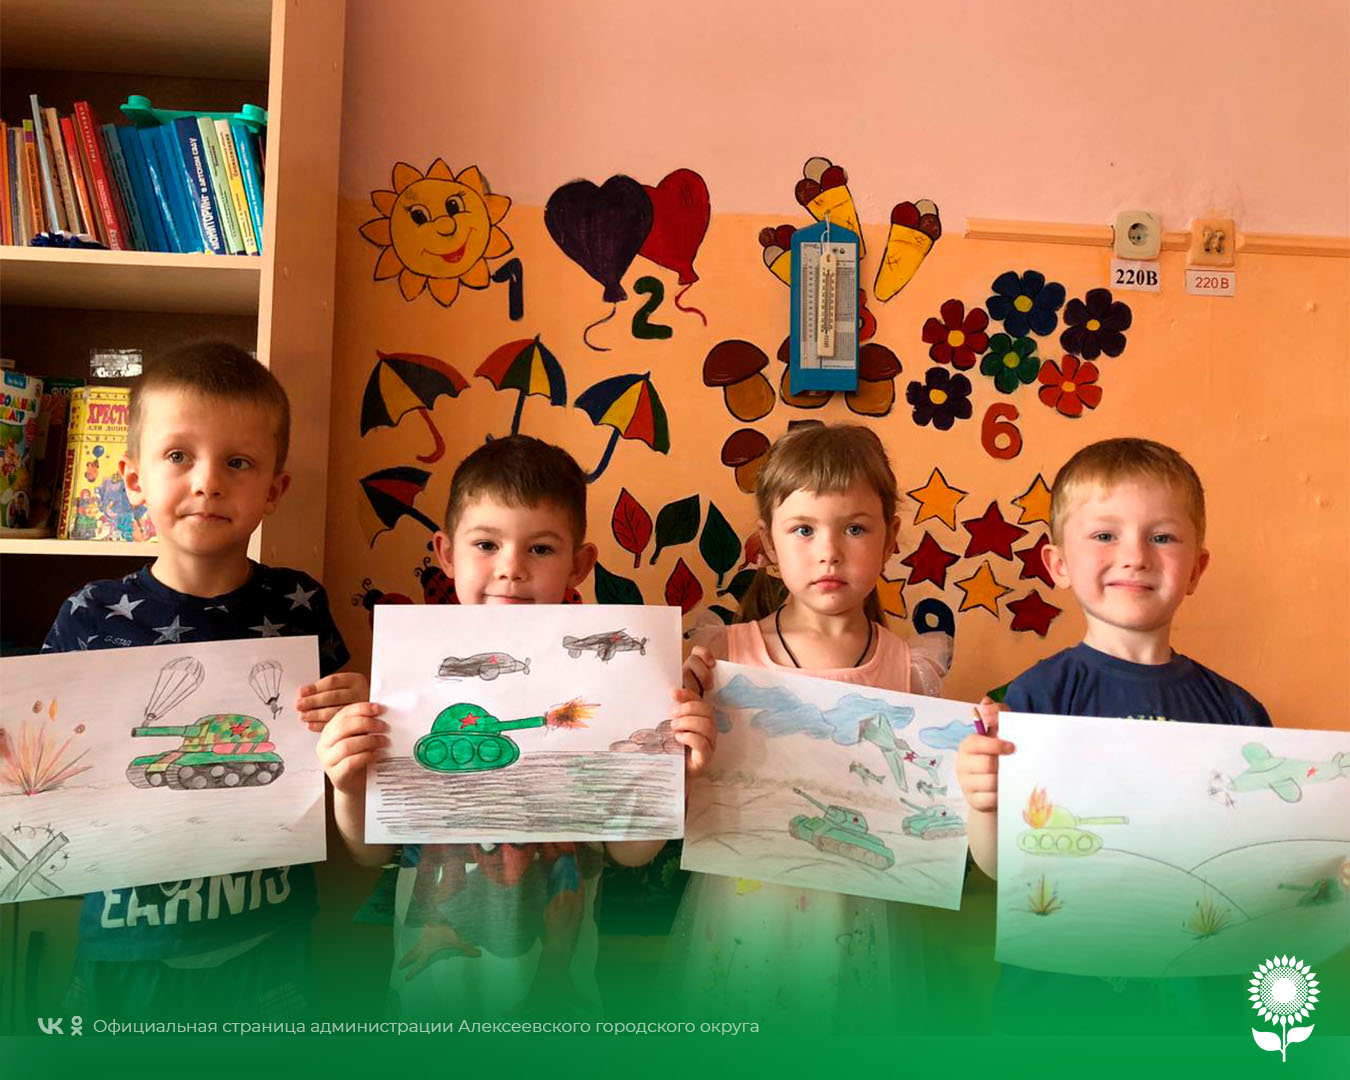 В детских садах Алексеевского городского округа прошел конкурс детского рисунка «Прохоровское сражение глазами ребенка 21 века».